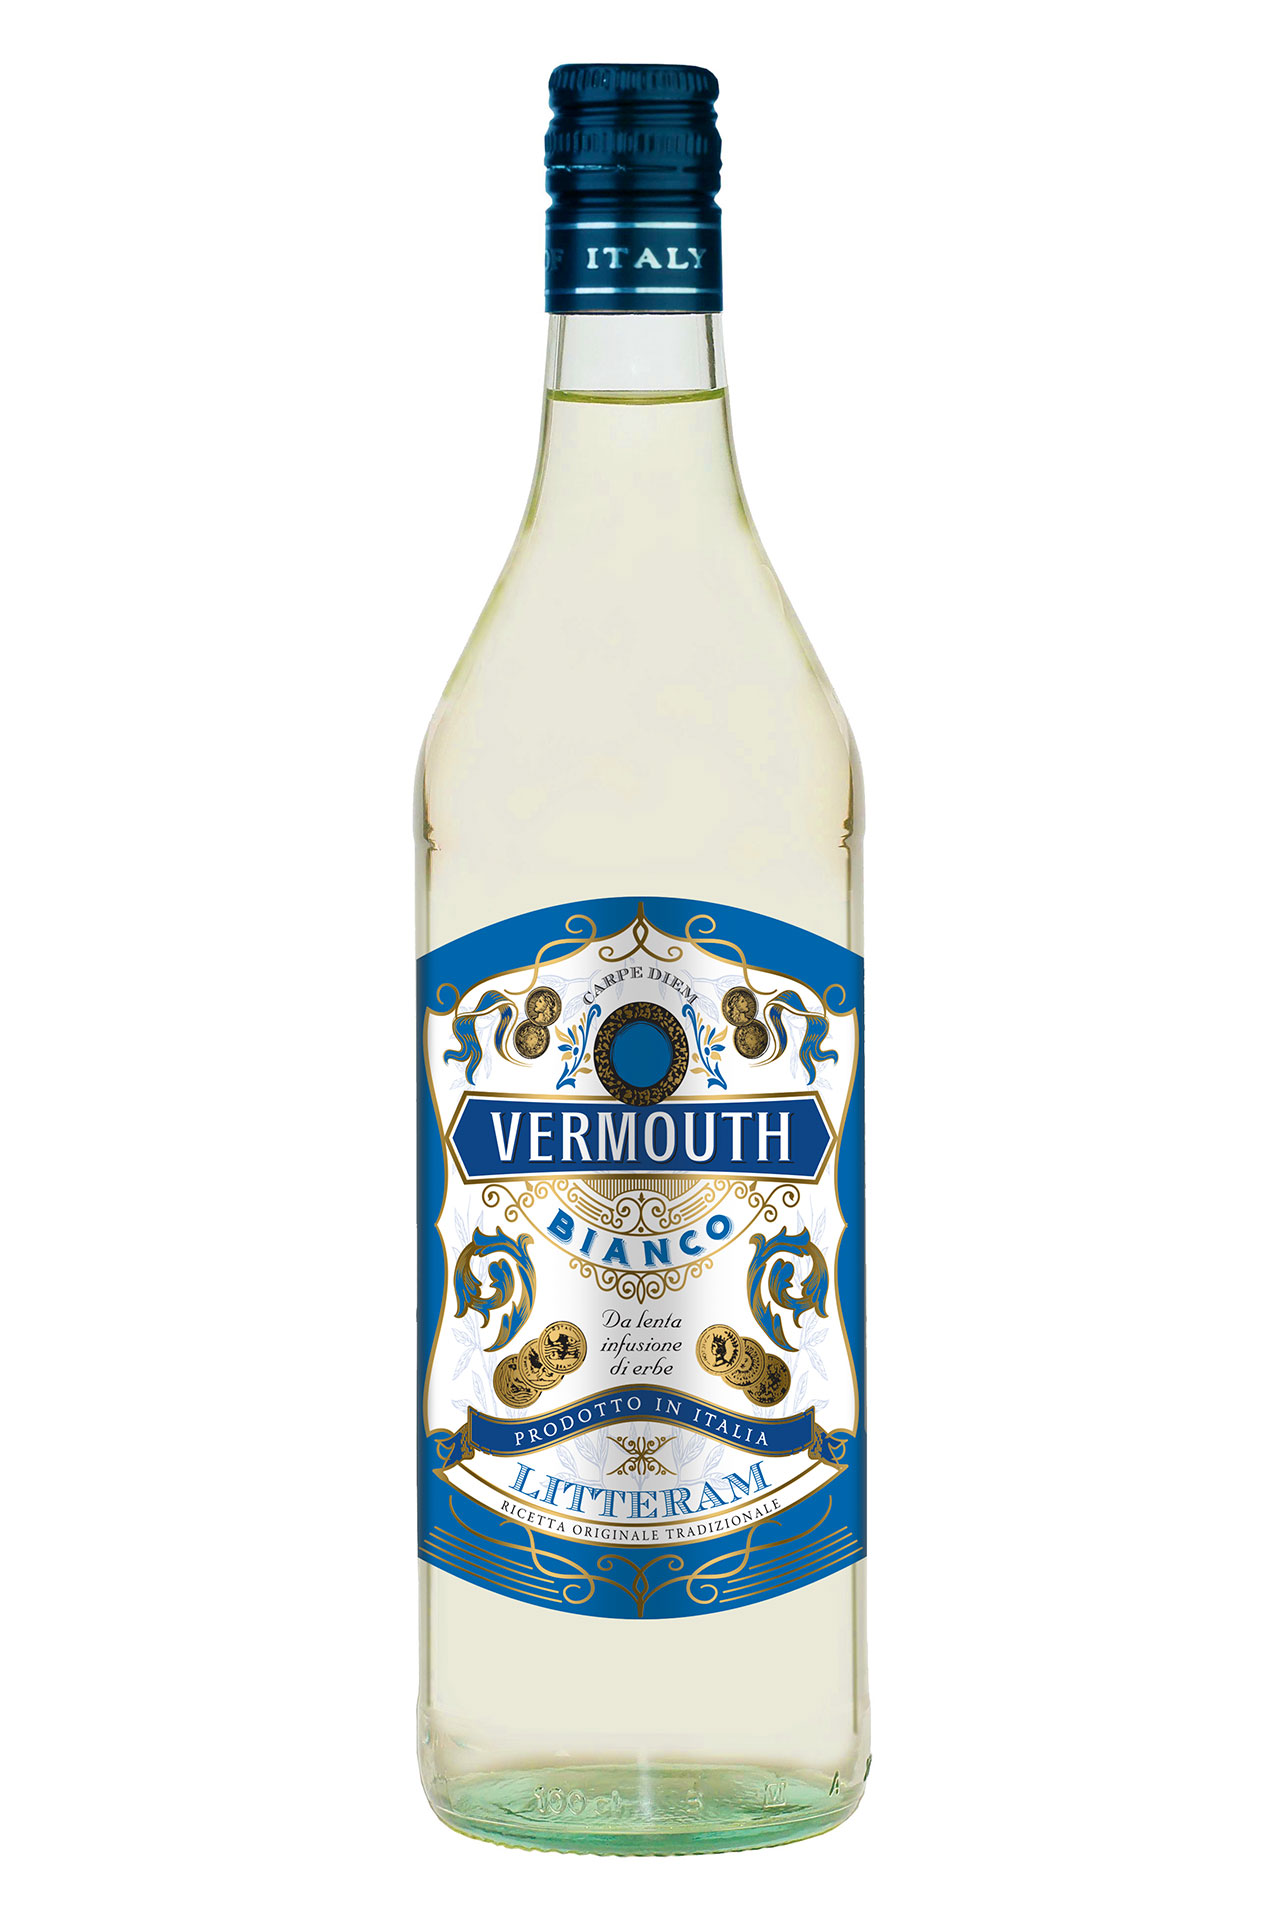 costanza-vini-vermouth-bianco-litteram